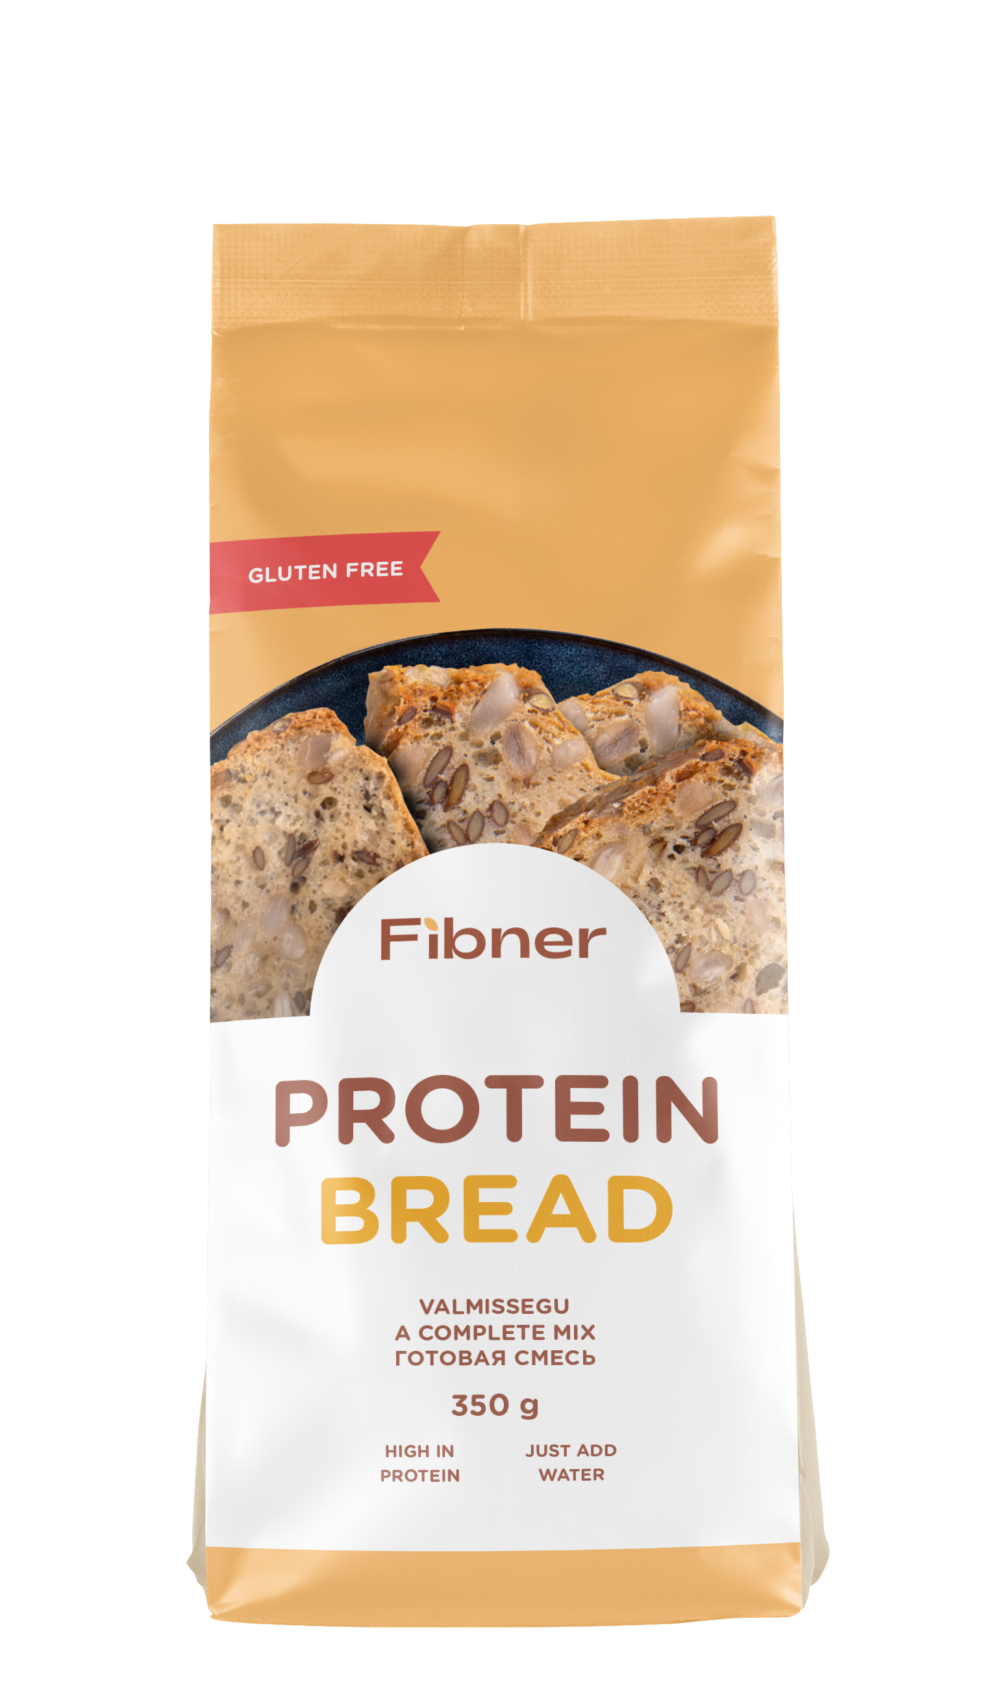 Gluten free protein bread